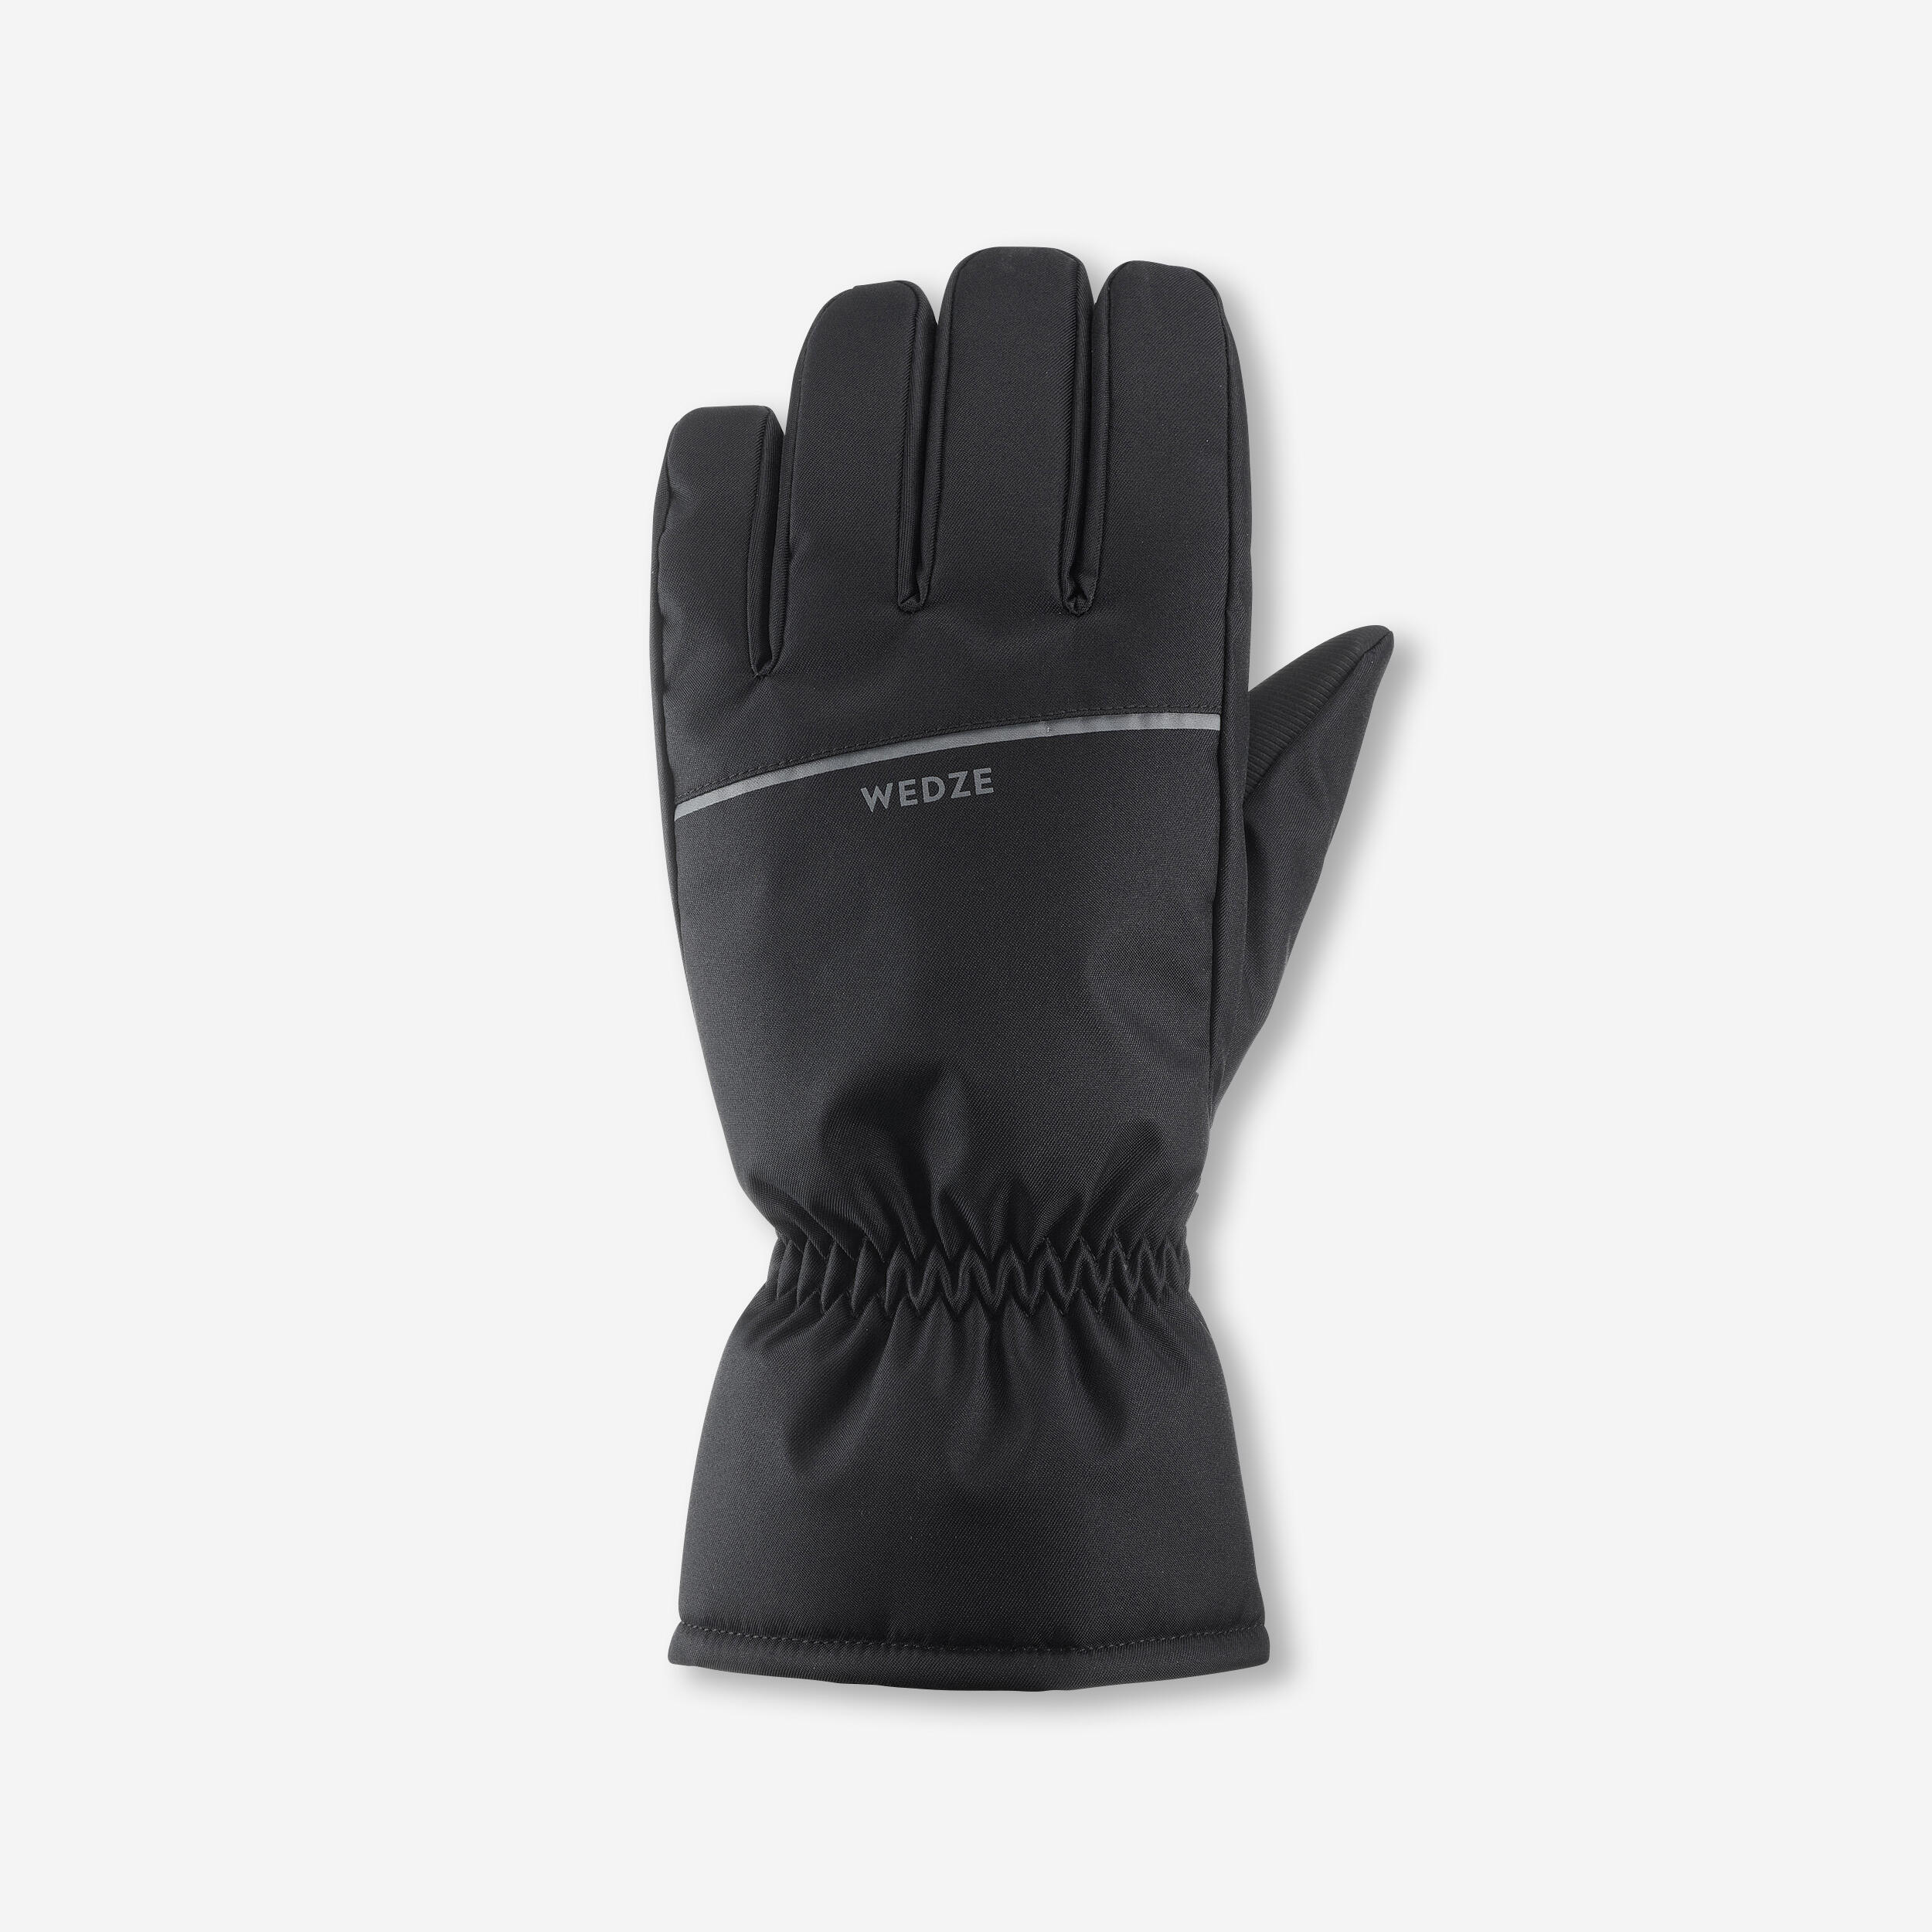 gants de ski adulte 100 - noirs - wedze